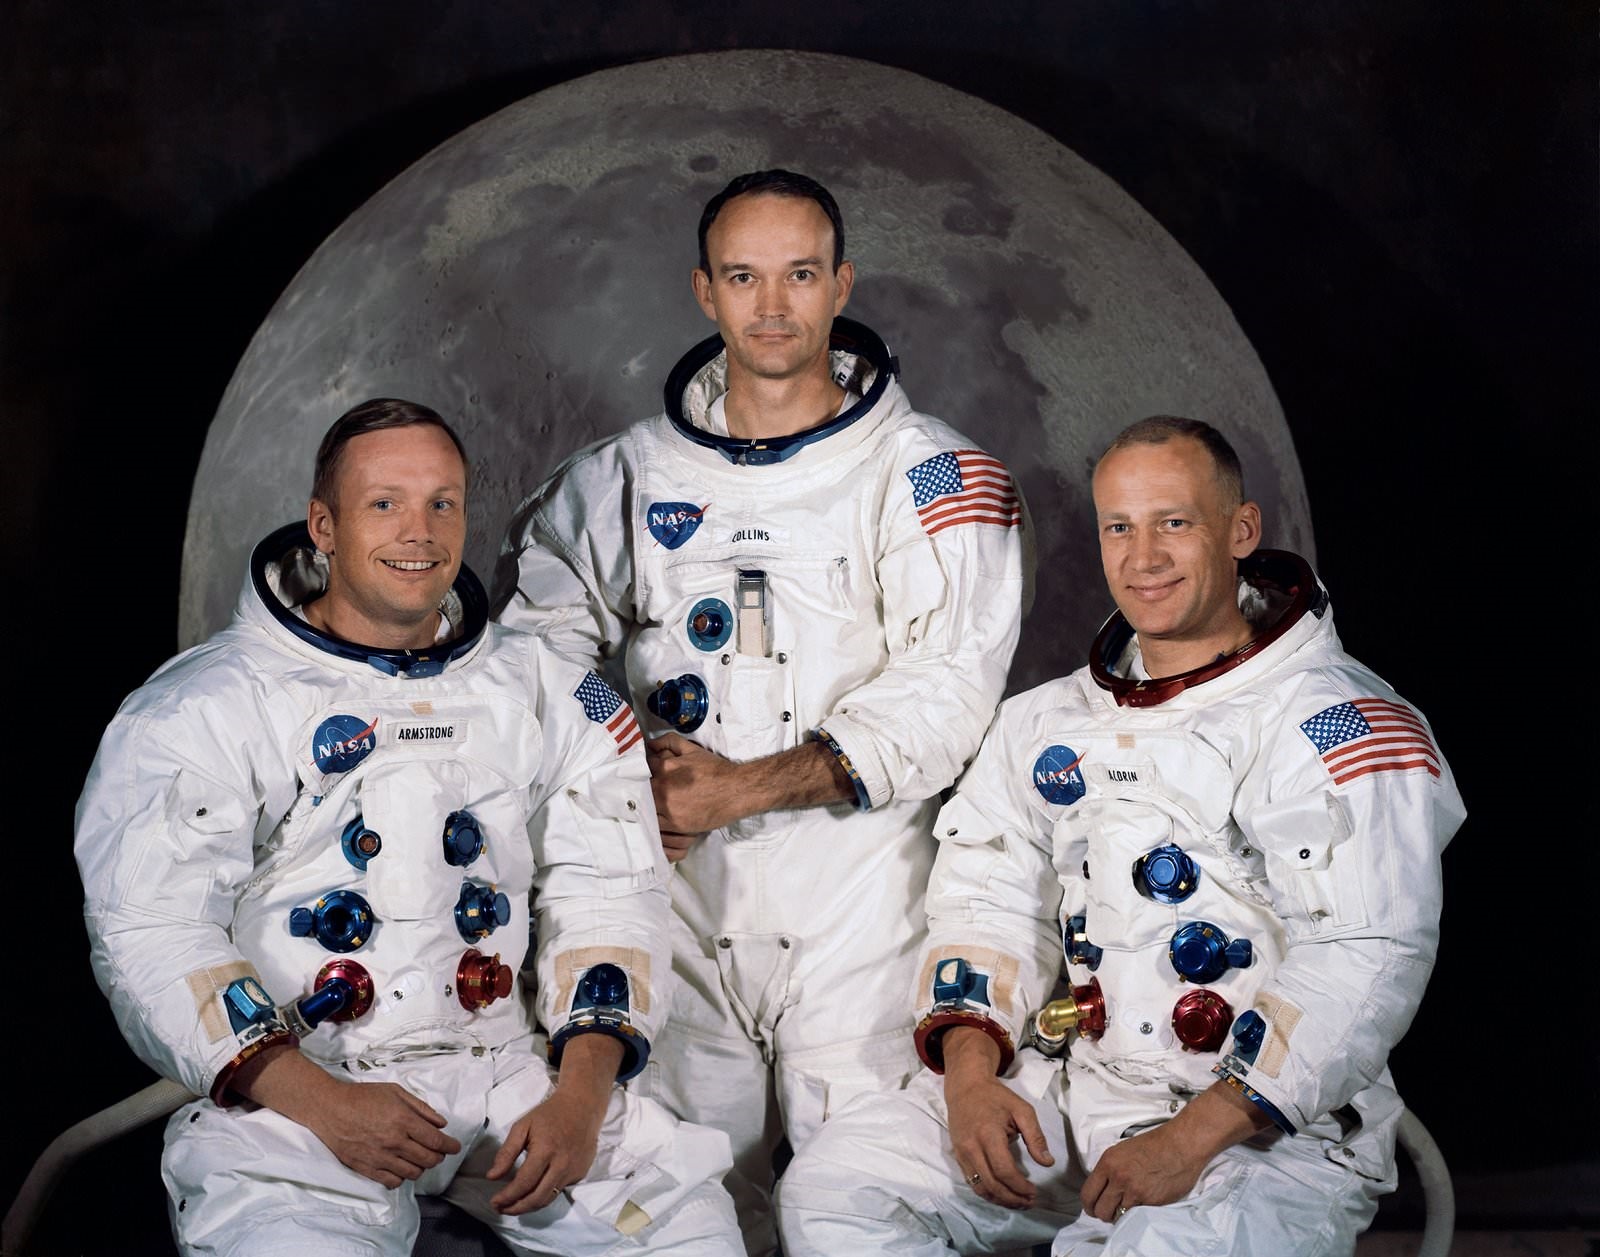 阿波羅 11 號宇航員。圖片來源:NASA